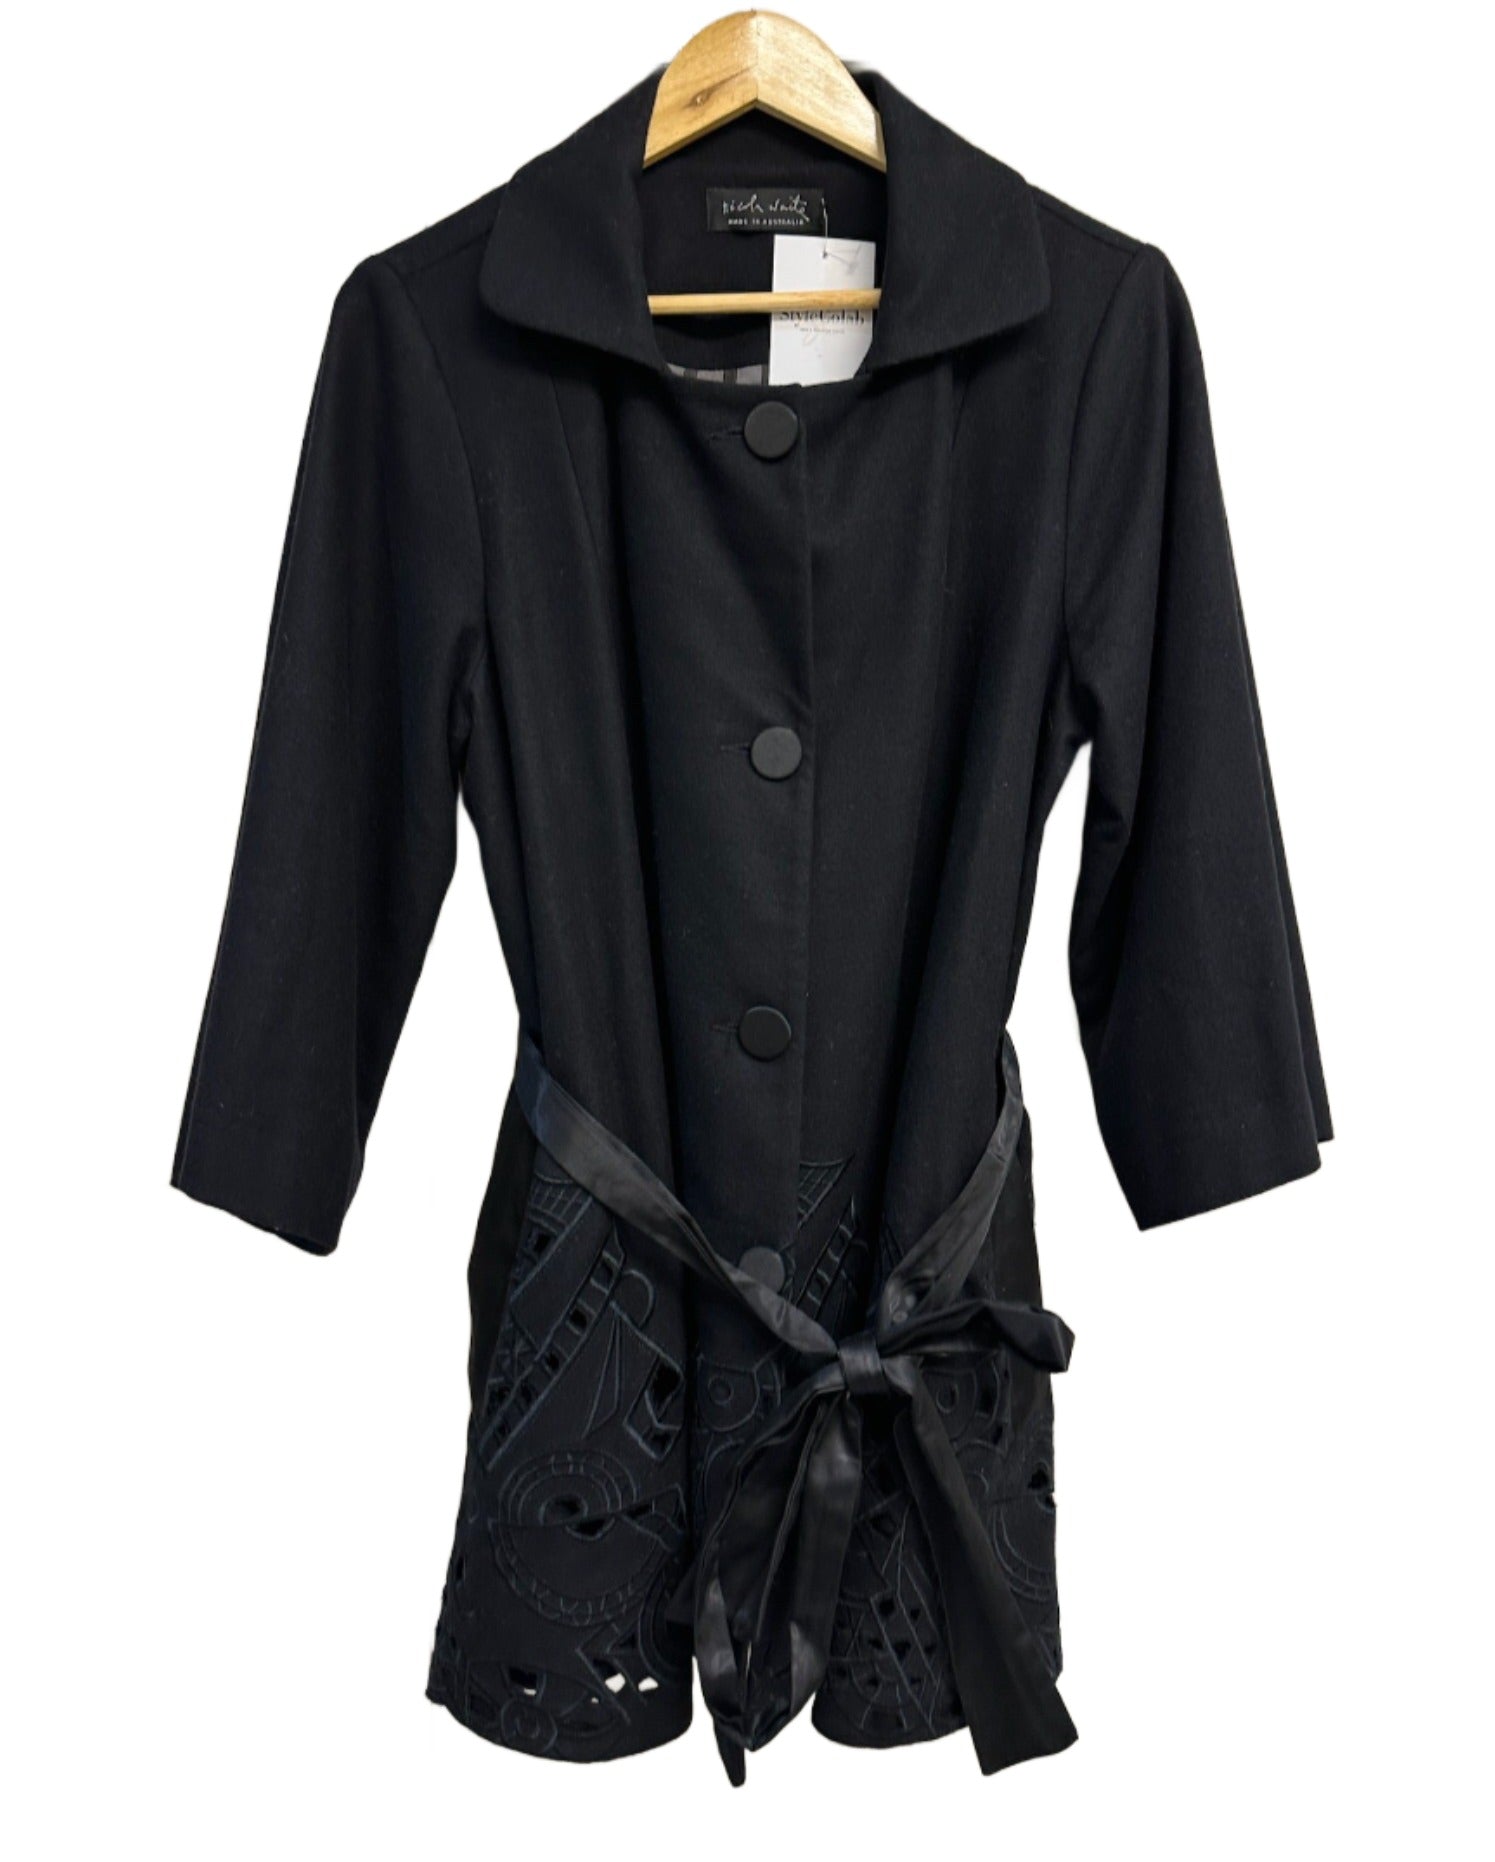 Nicola Waite Black Wool Jacket